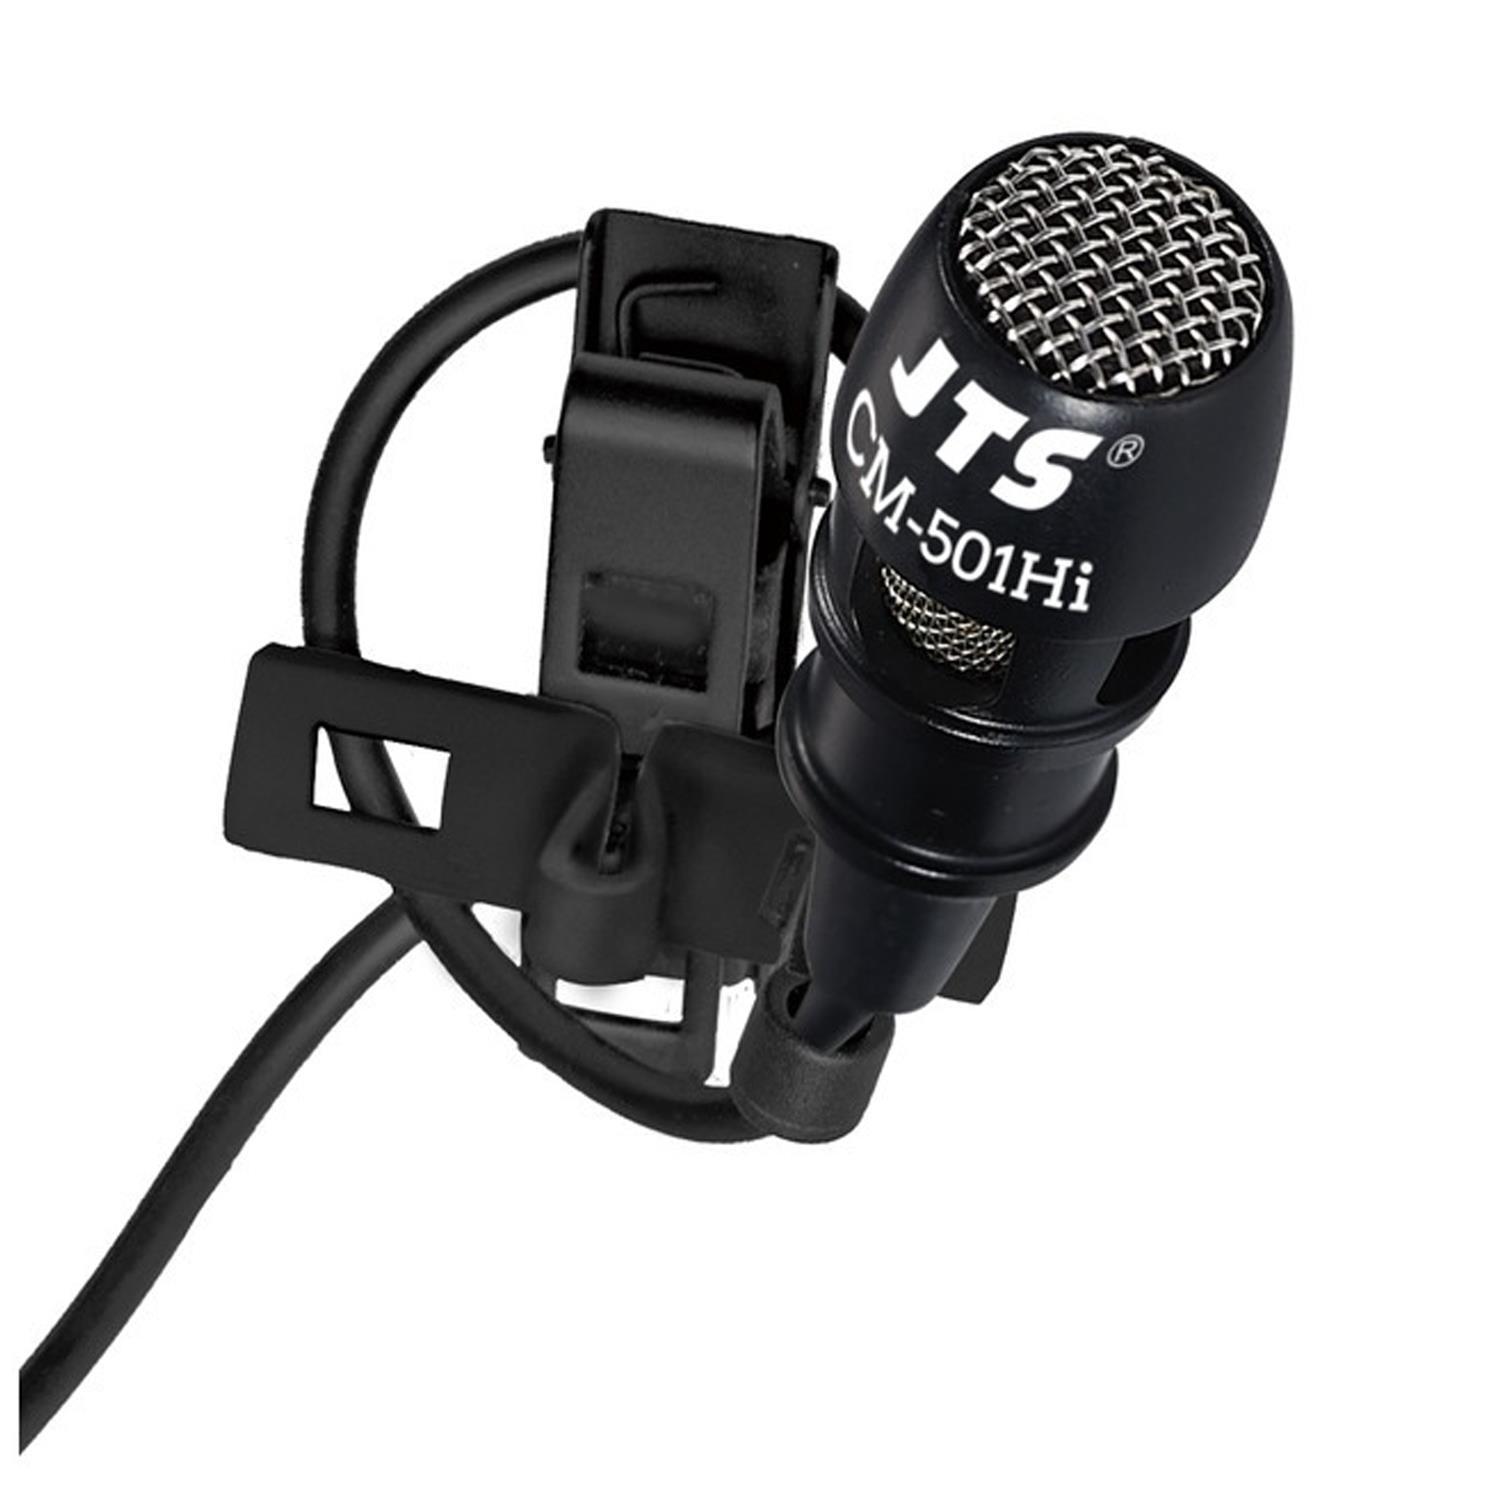 JTS CM-501Hi Black Condenser Lavaliere Microphone - DY Pro Audio